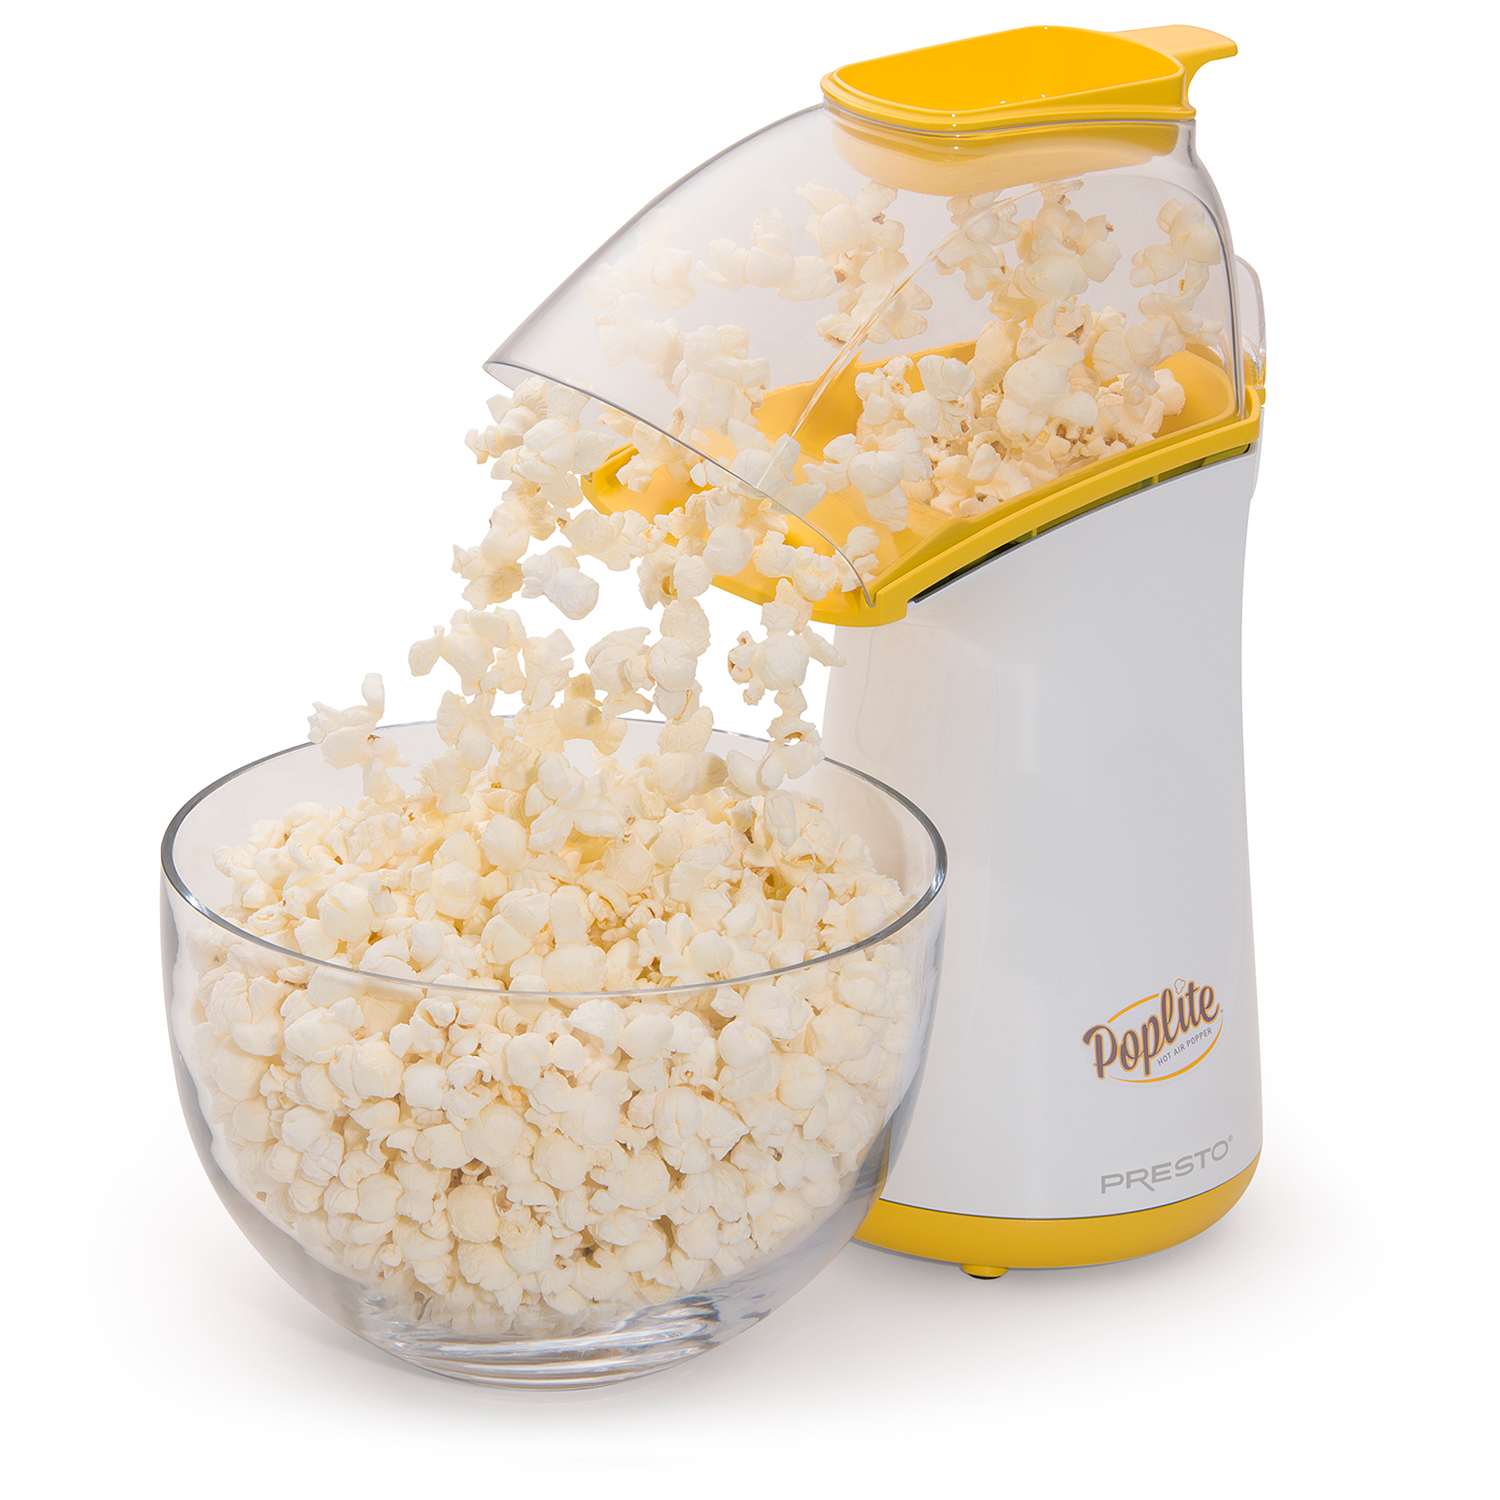 Stovetop Black Popcorn Popper + Reviews